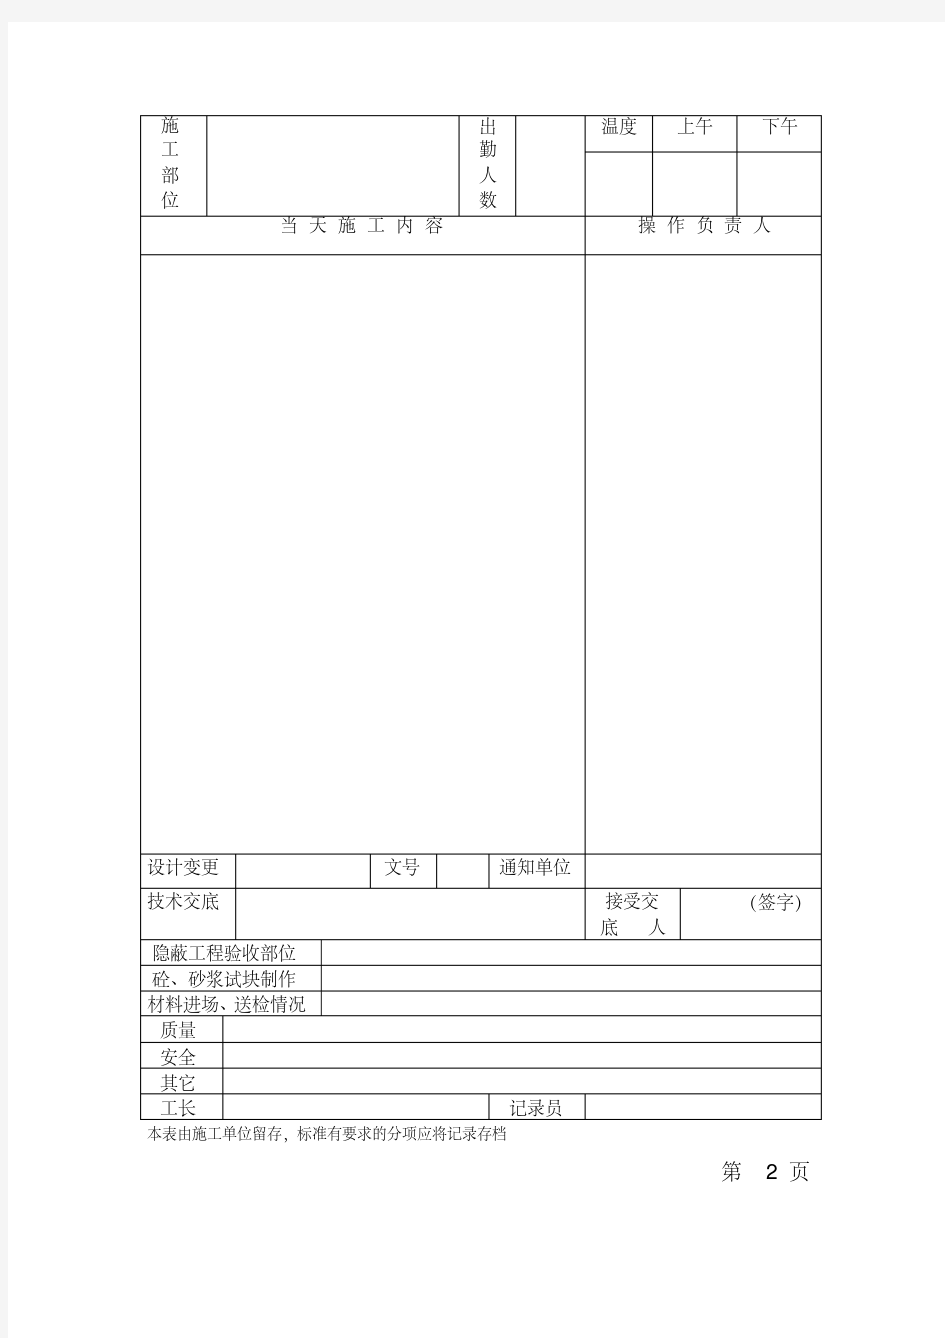 施工日志表格版.pdf